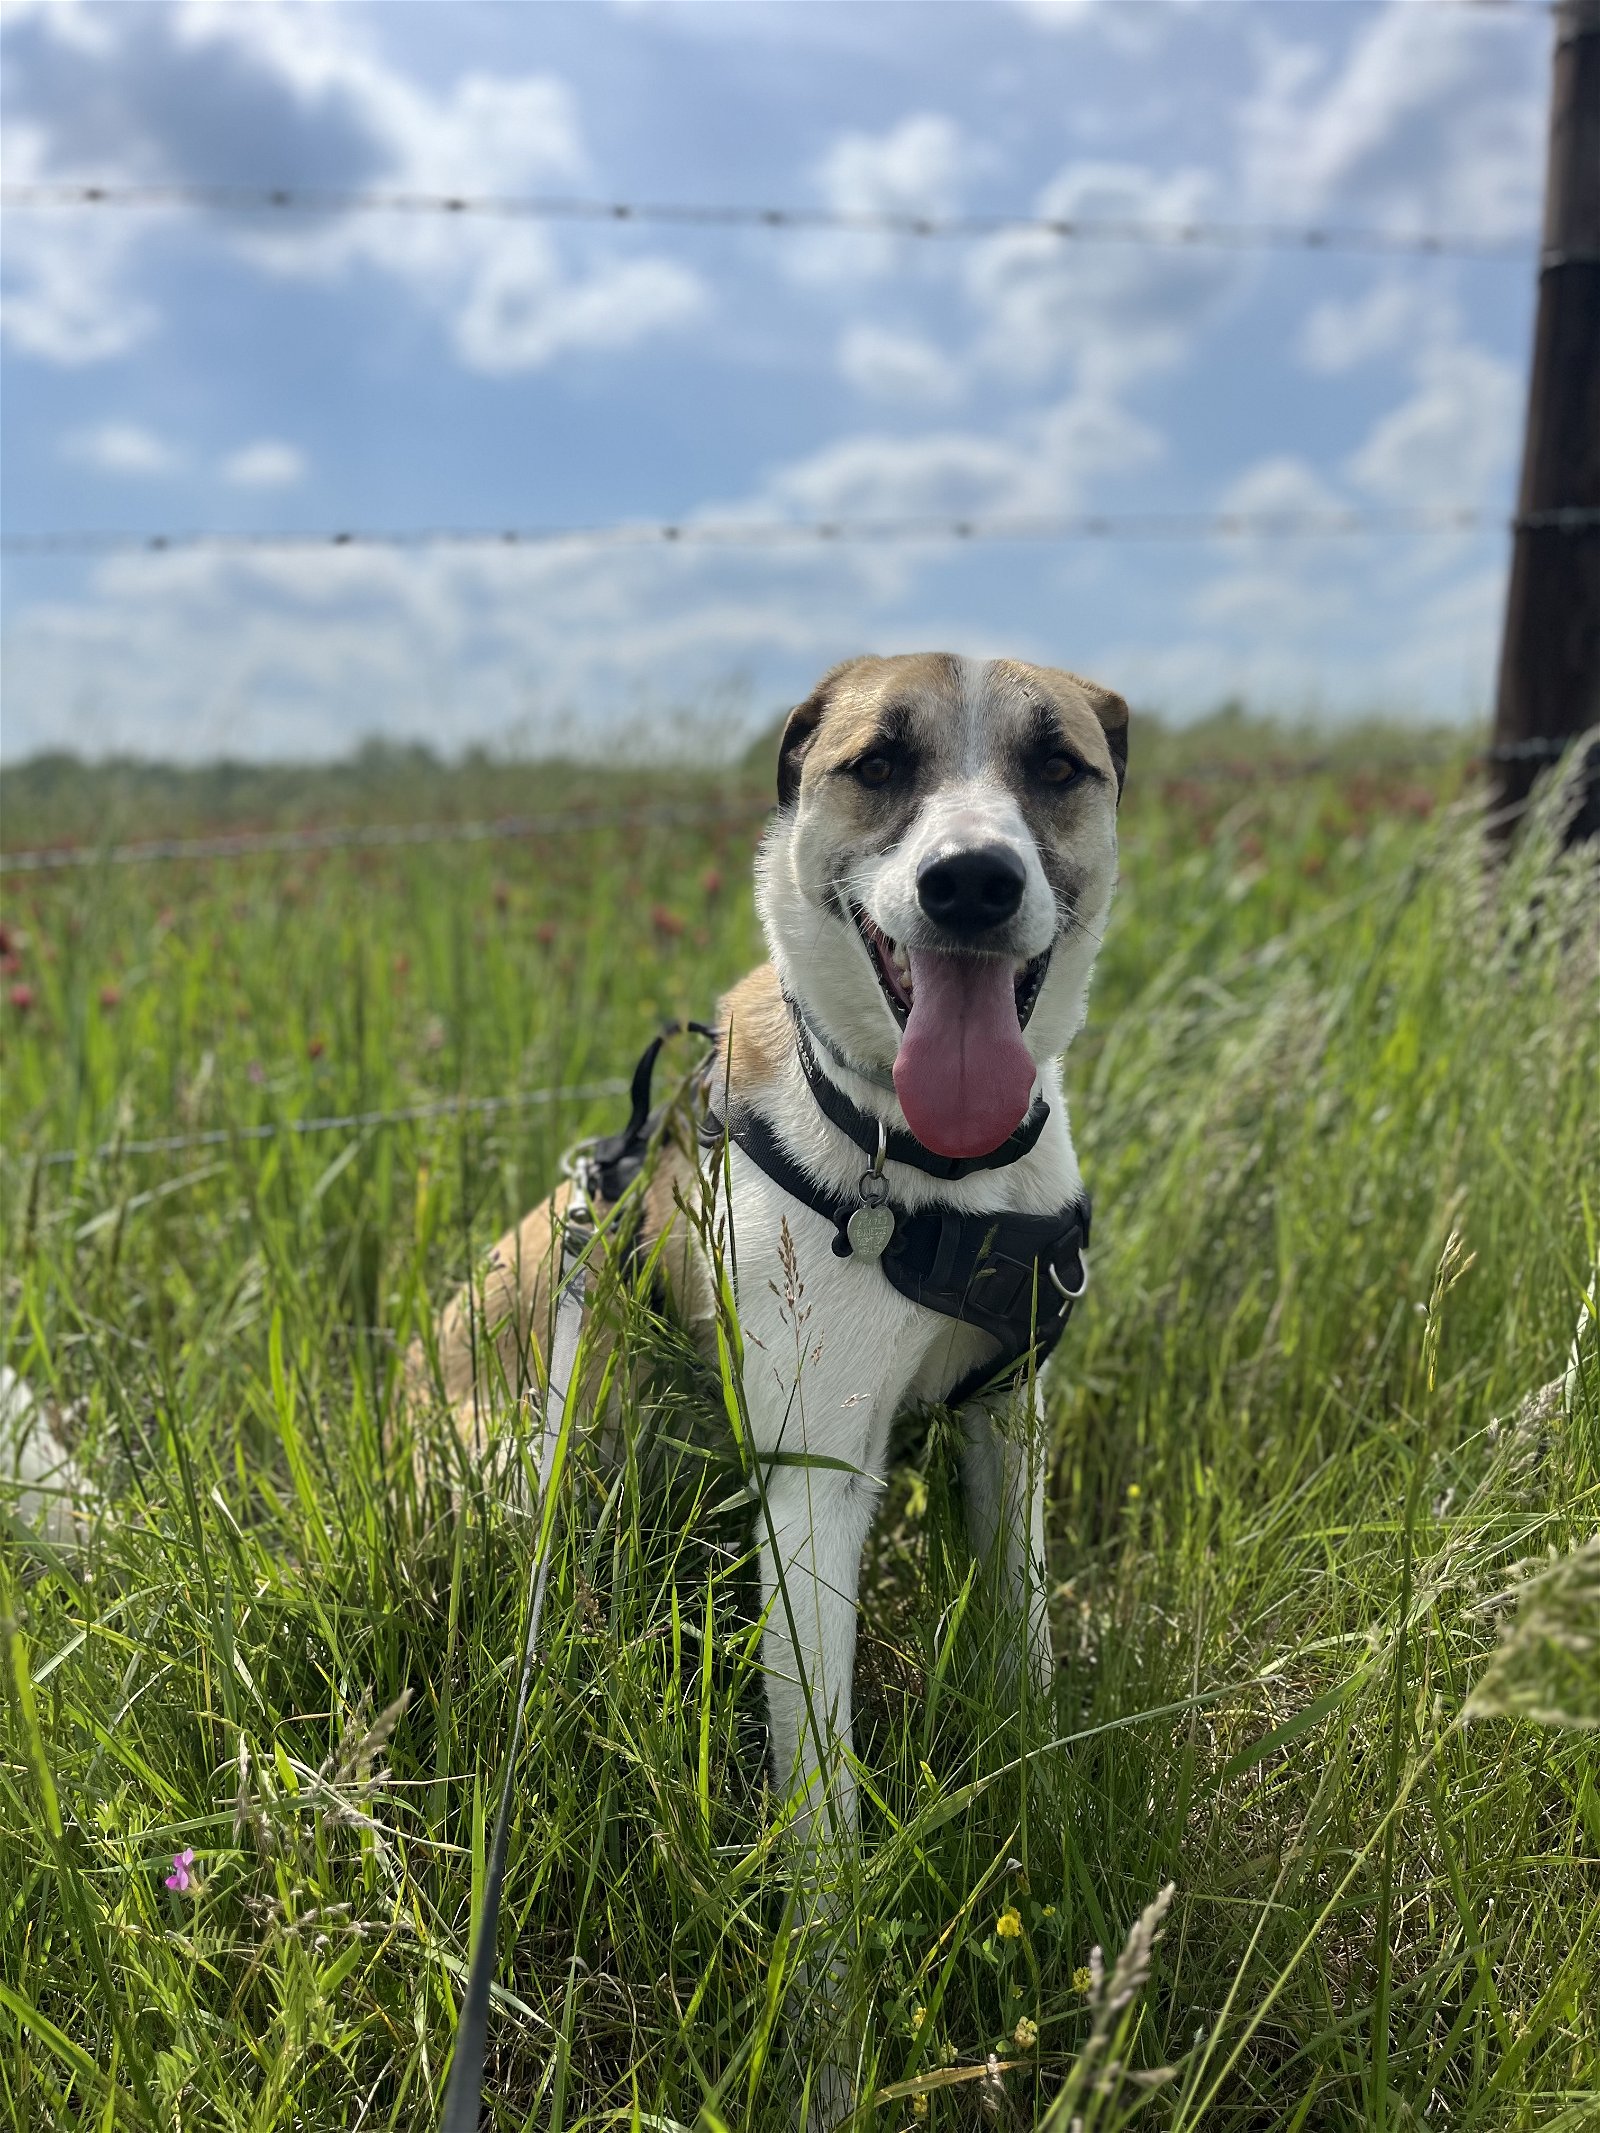 adoptable Dog in Nashville, TN named Odin